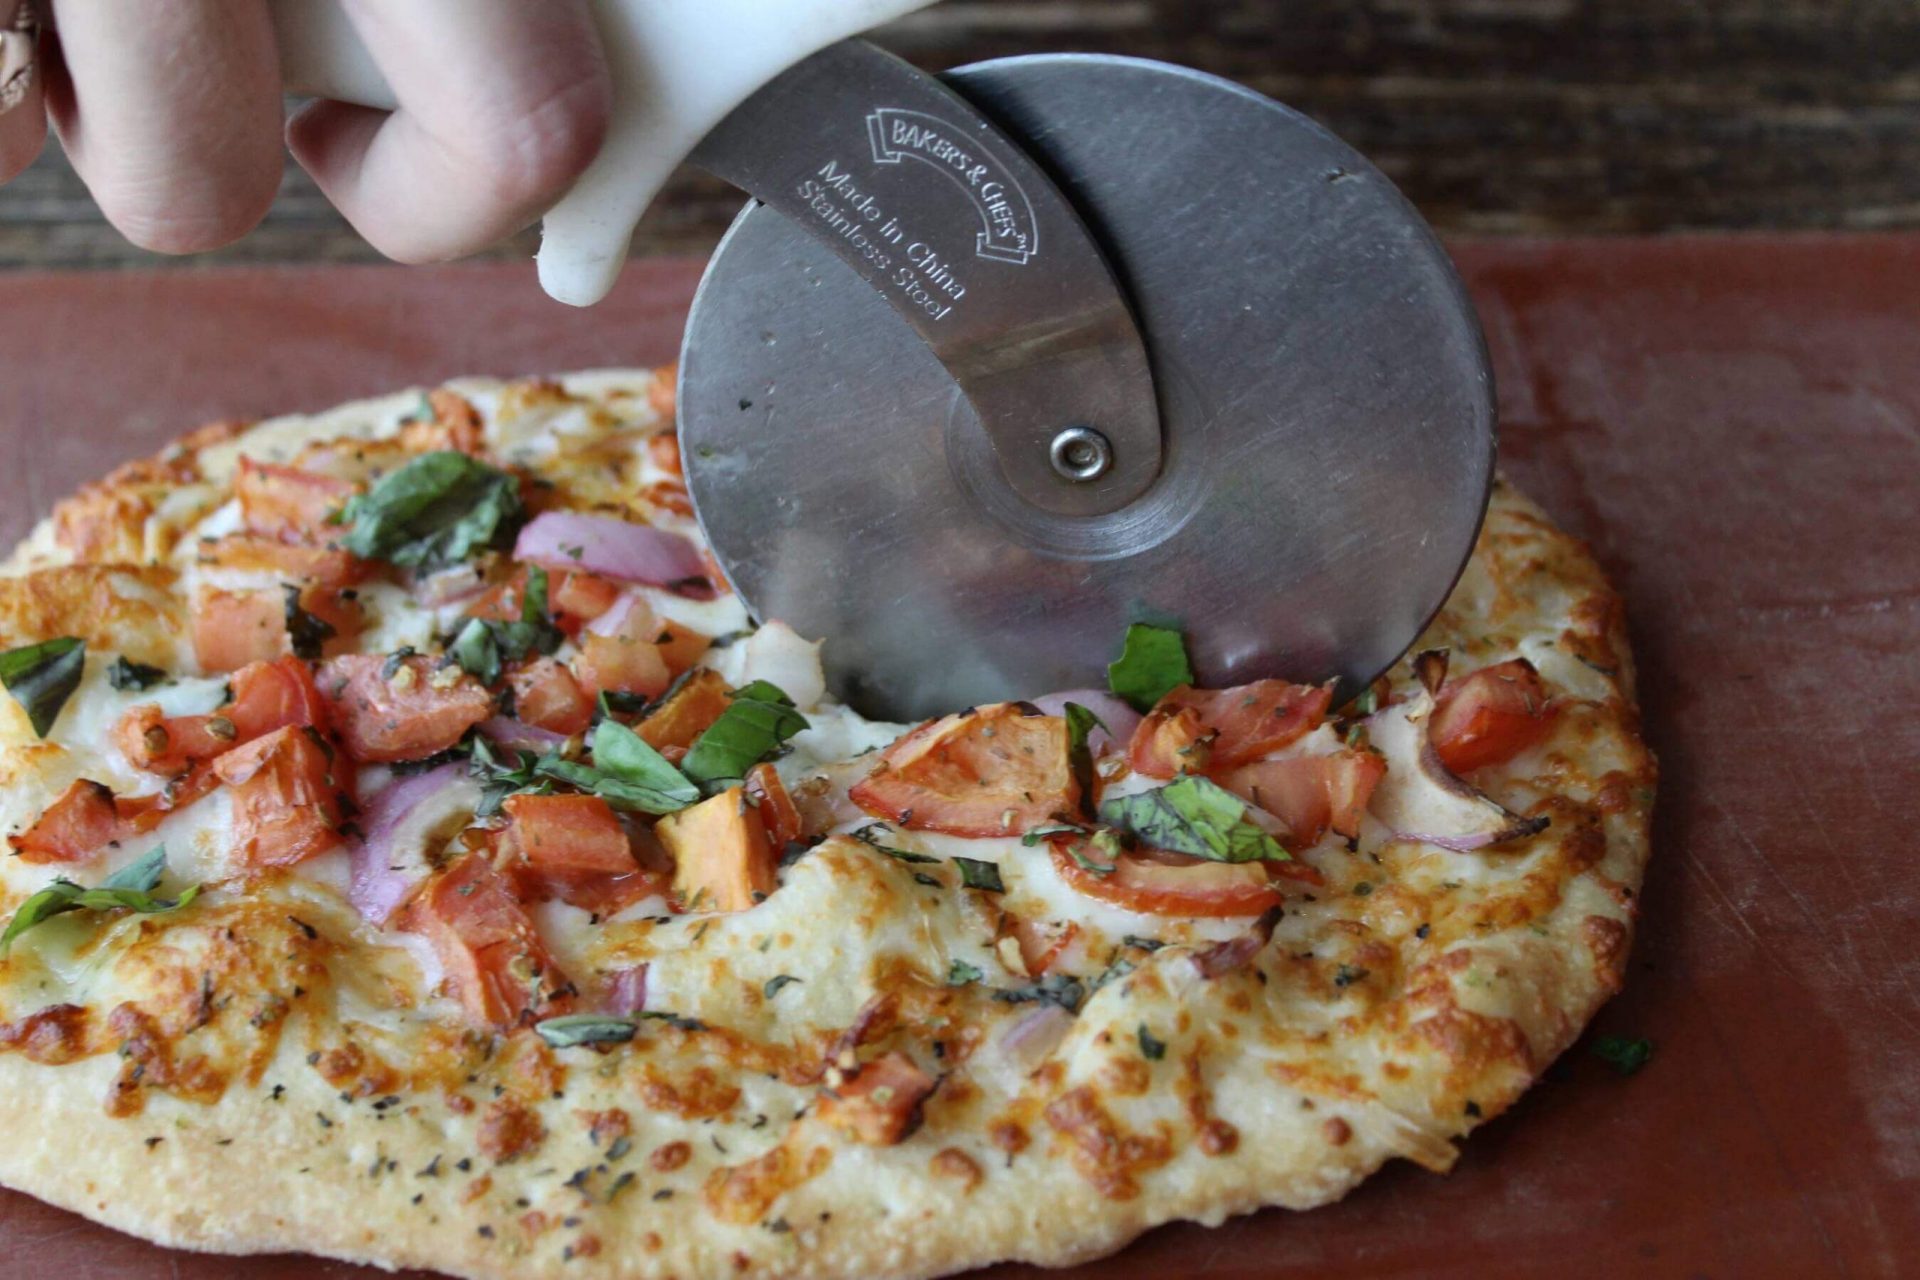 Pizza cutter slicing a pizza